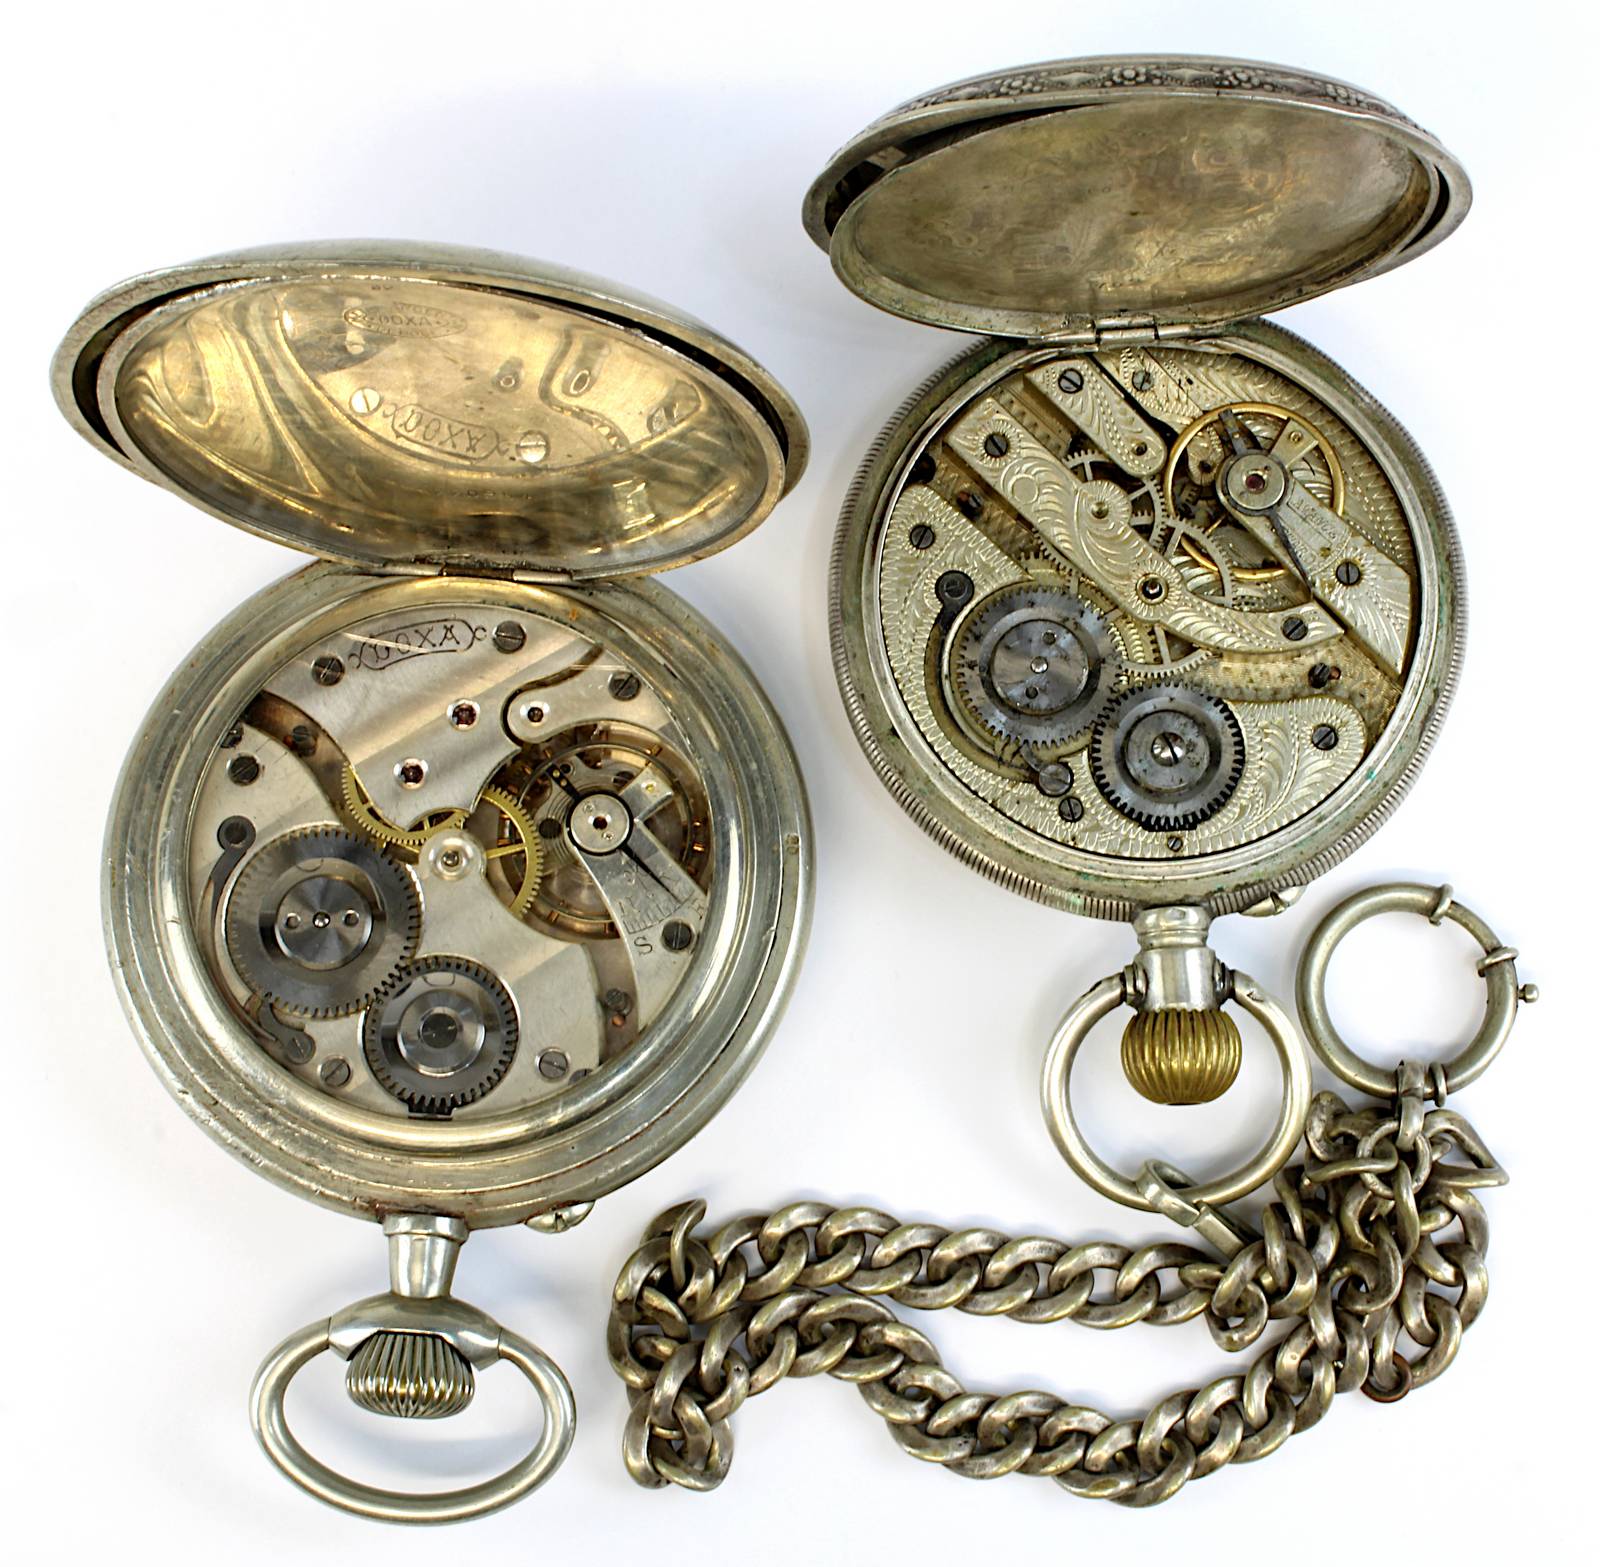 Zwei große Taschenuhren, Schweiz bzw. Frankreich Anfang 20. Jh., jeweils mechanisches Werk, - Image 2 of 2